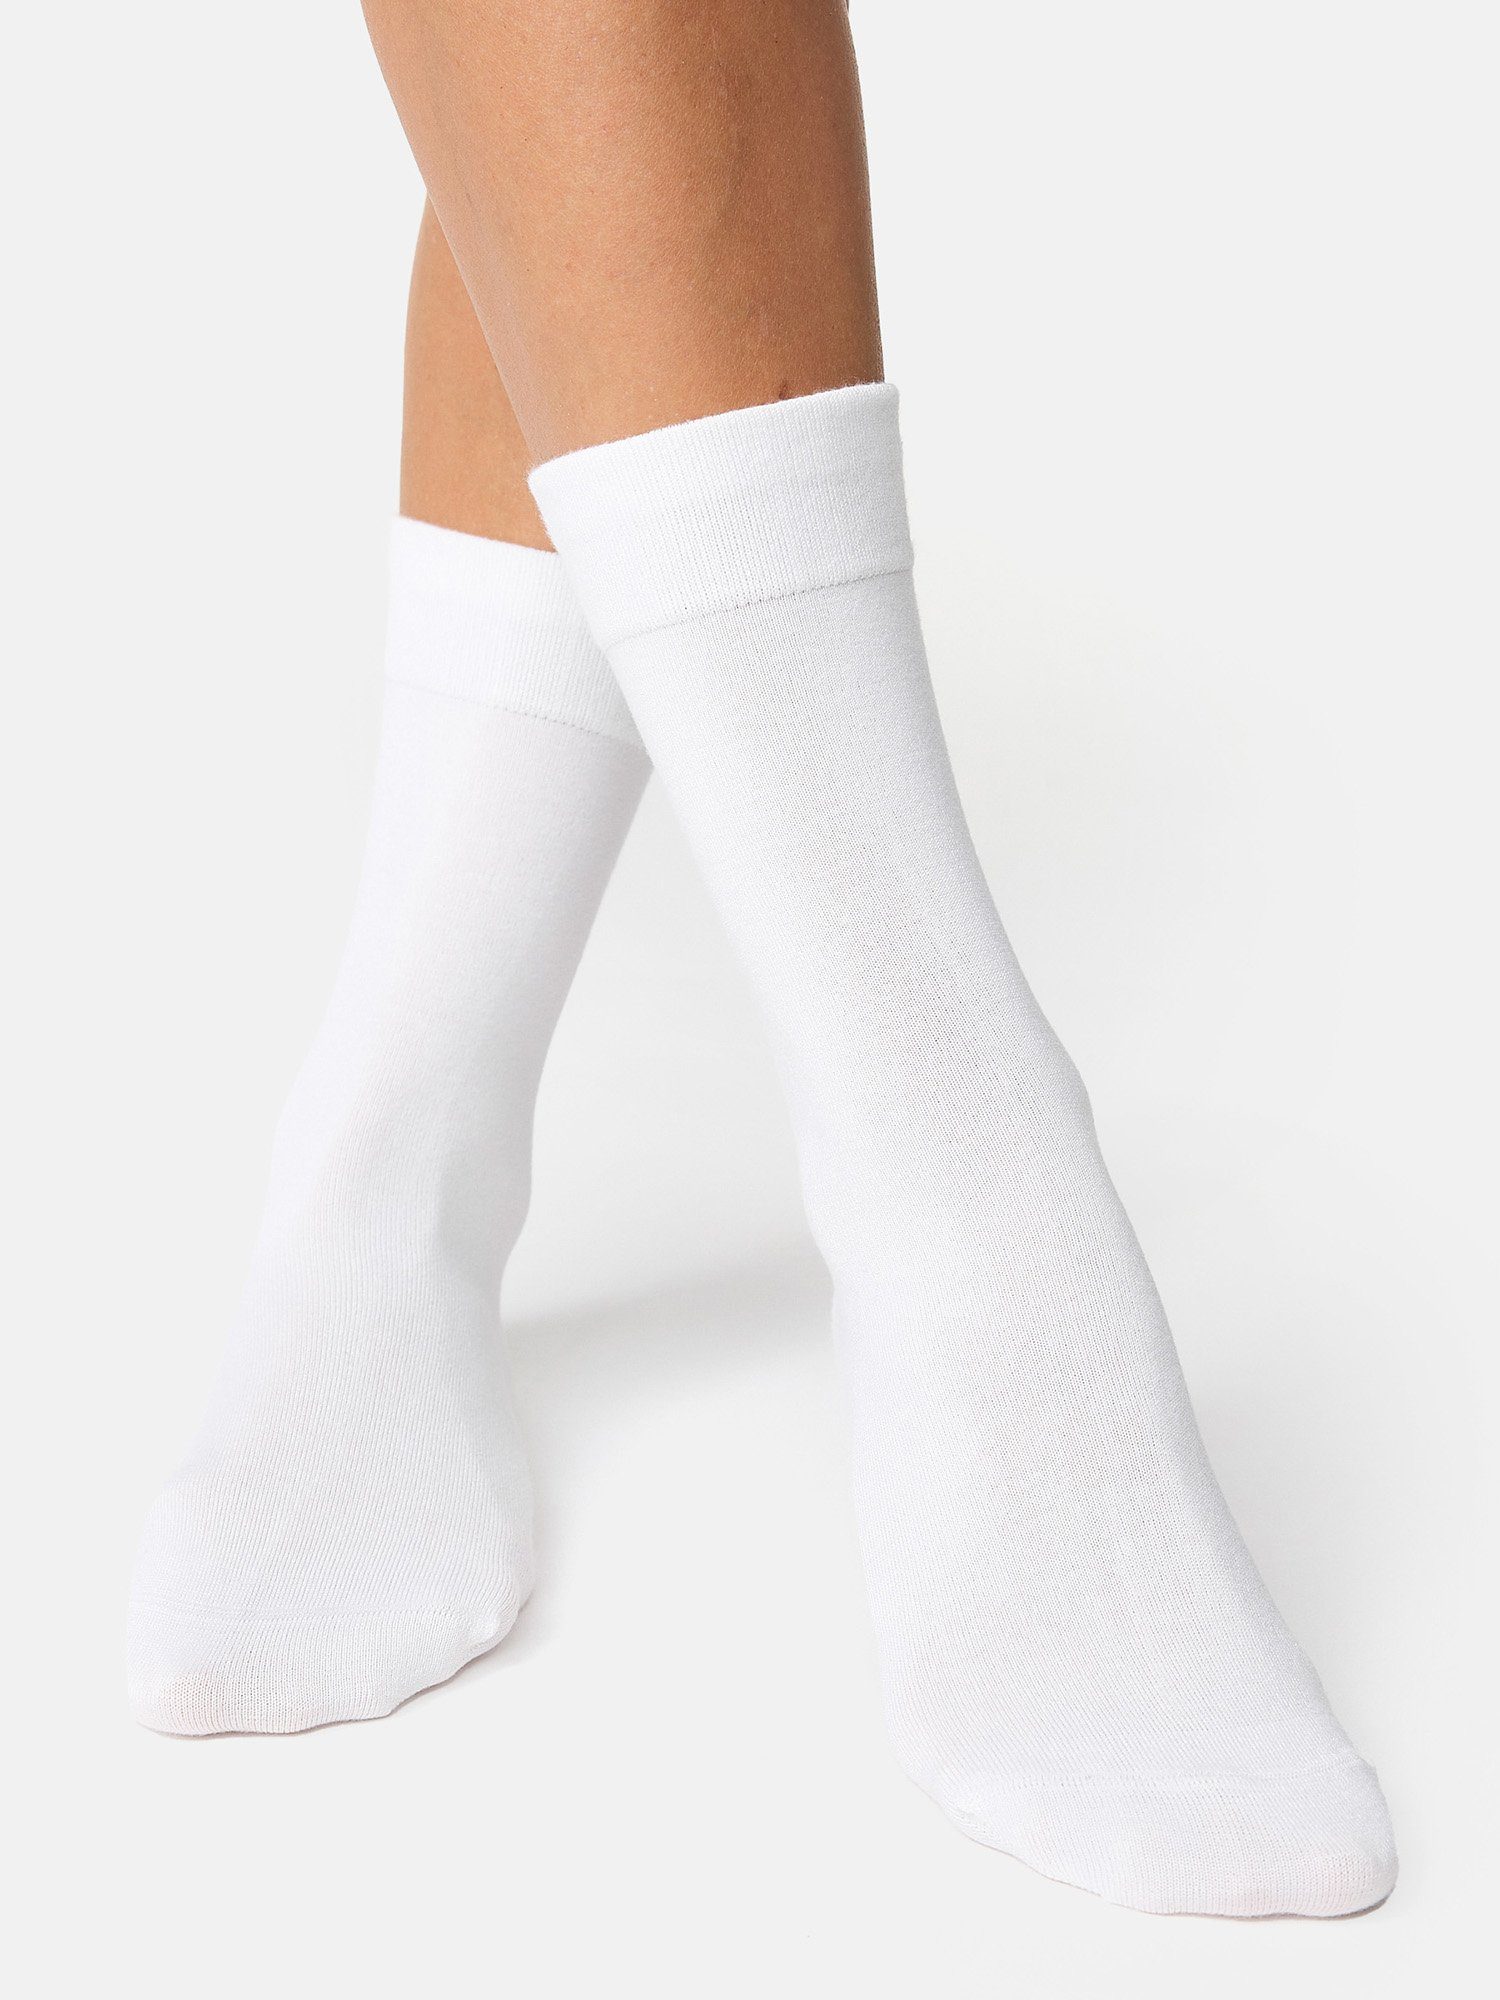 Nur Die Basicsocken Komfort günstig uni Bund weiß (8-Paar) Socken